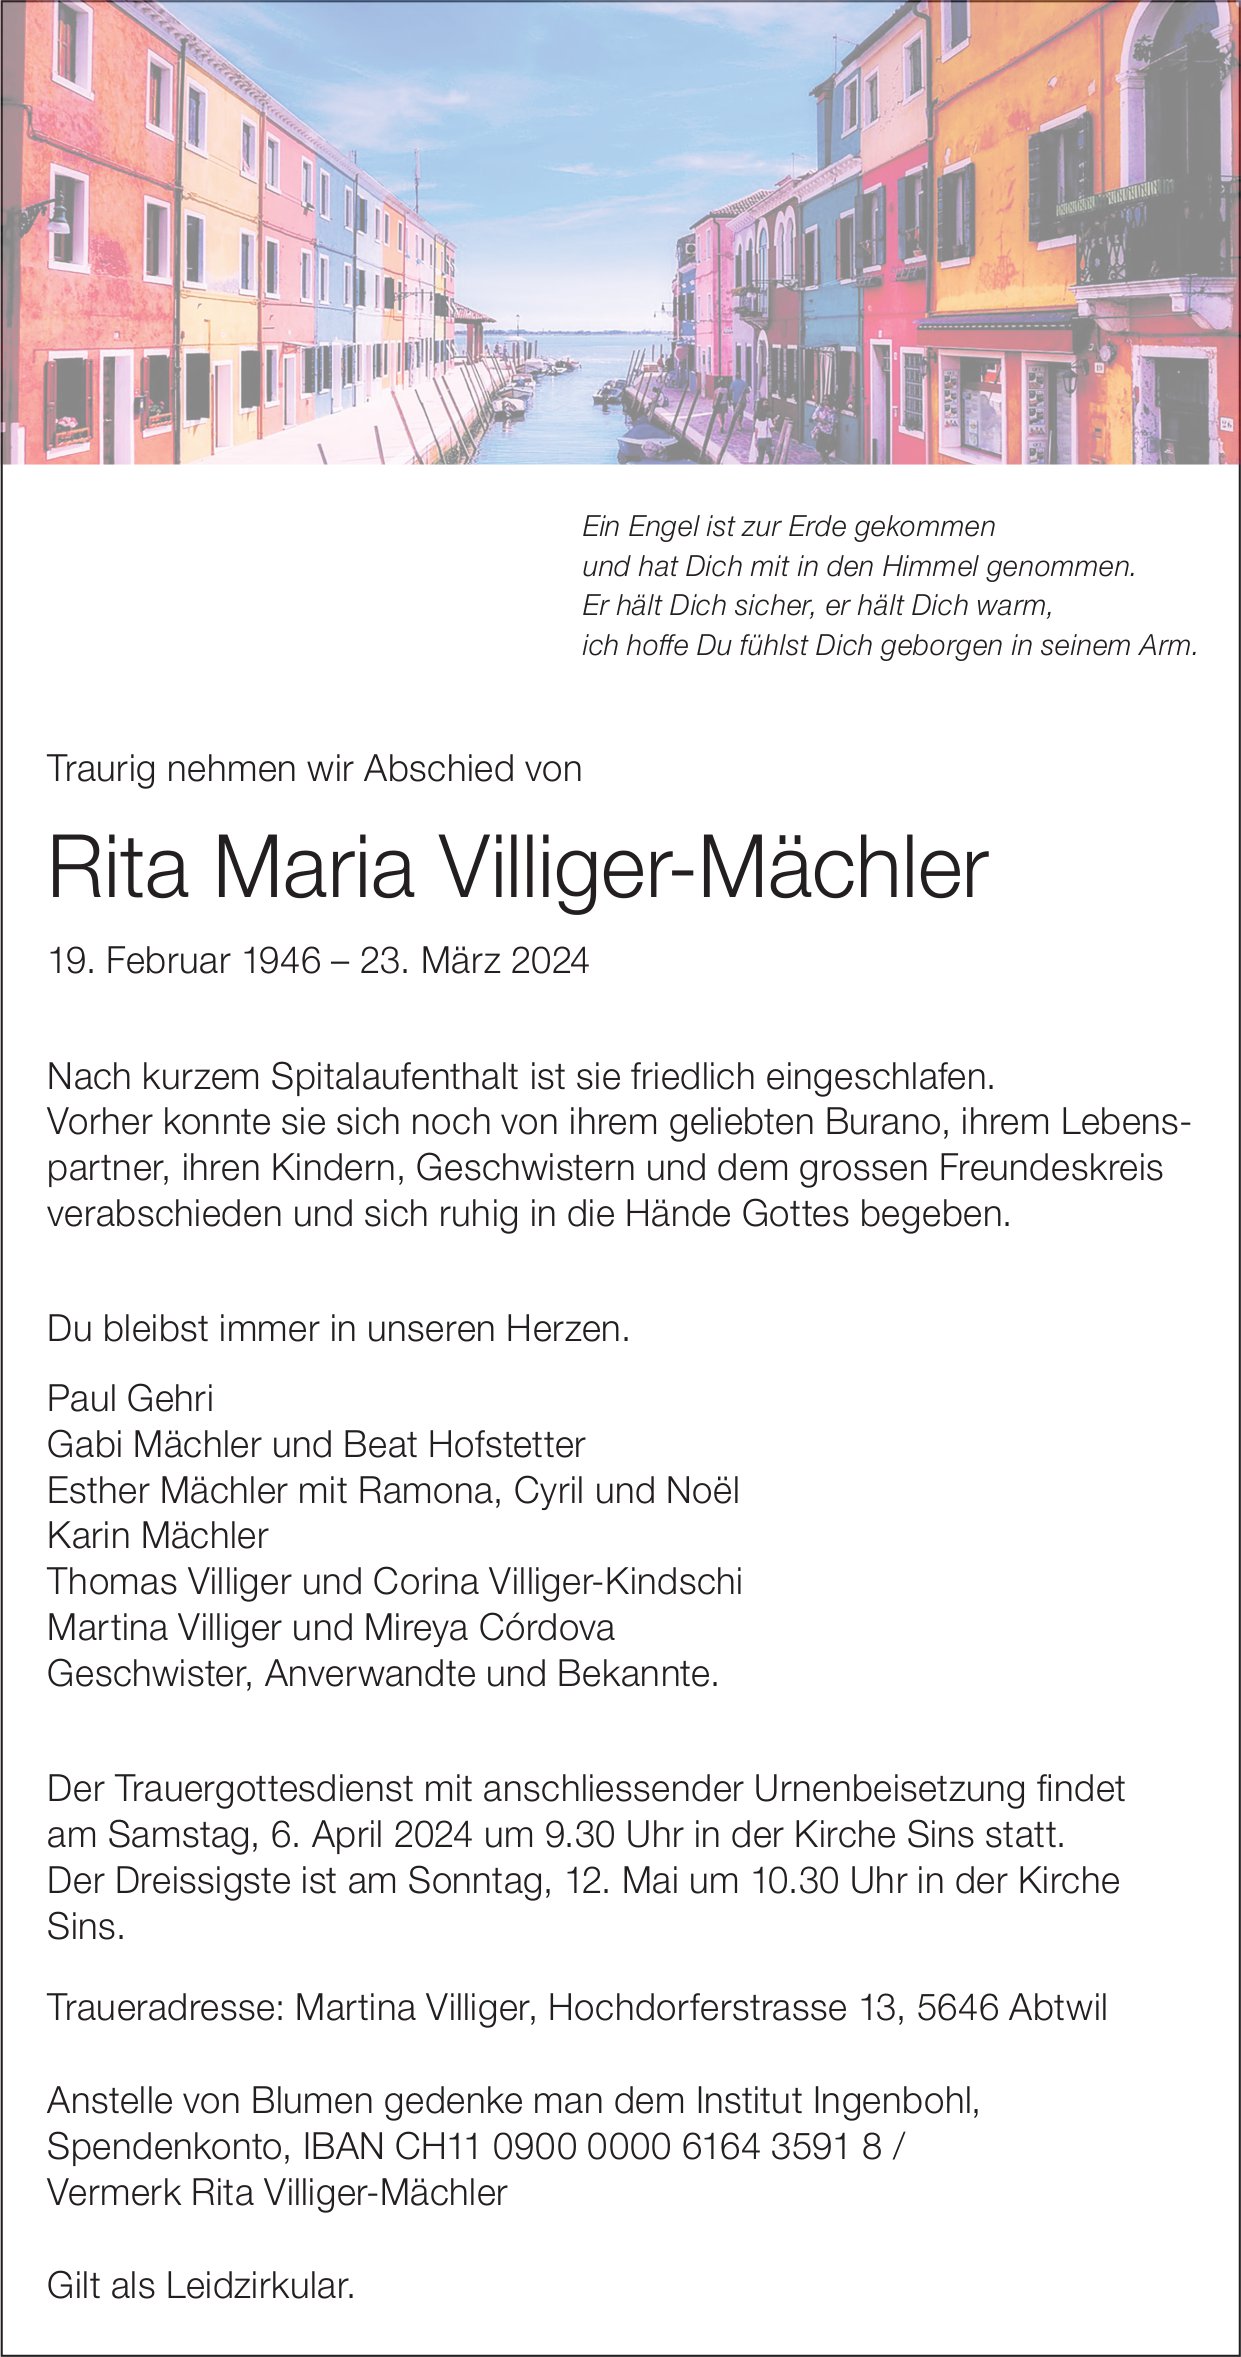 Villiger-Mächler Rita Maria, März 2024 / TA